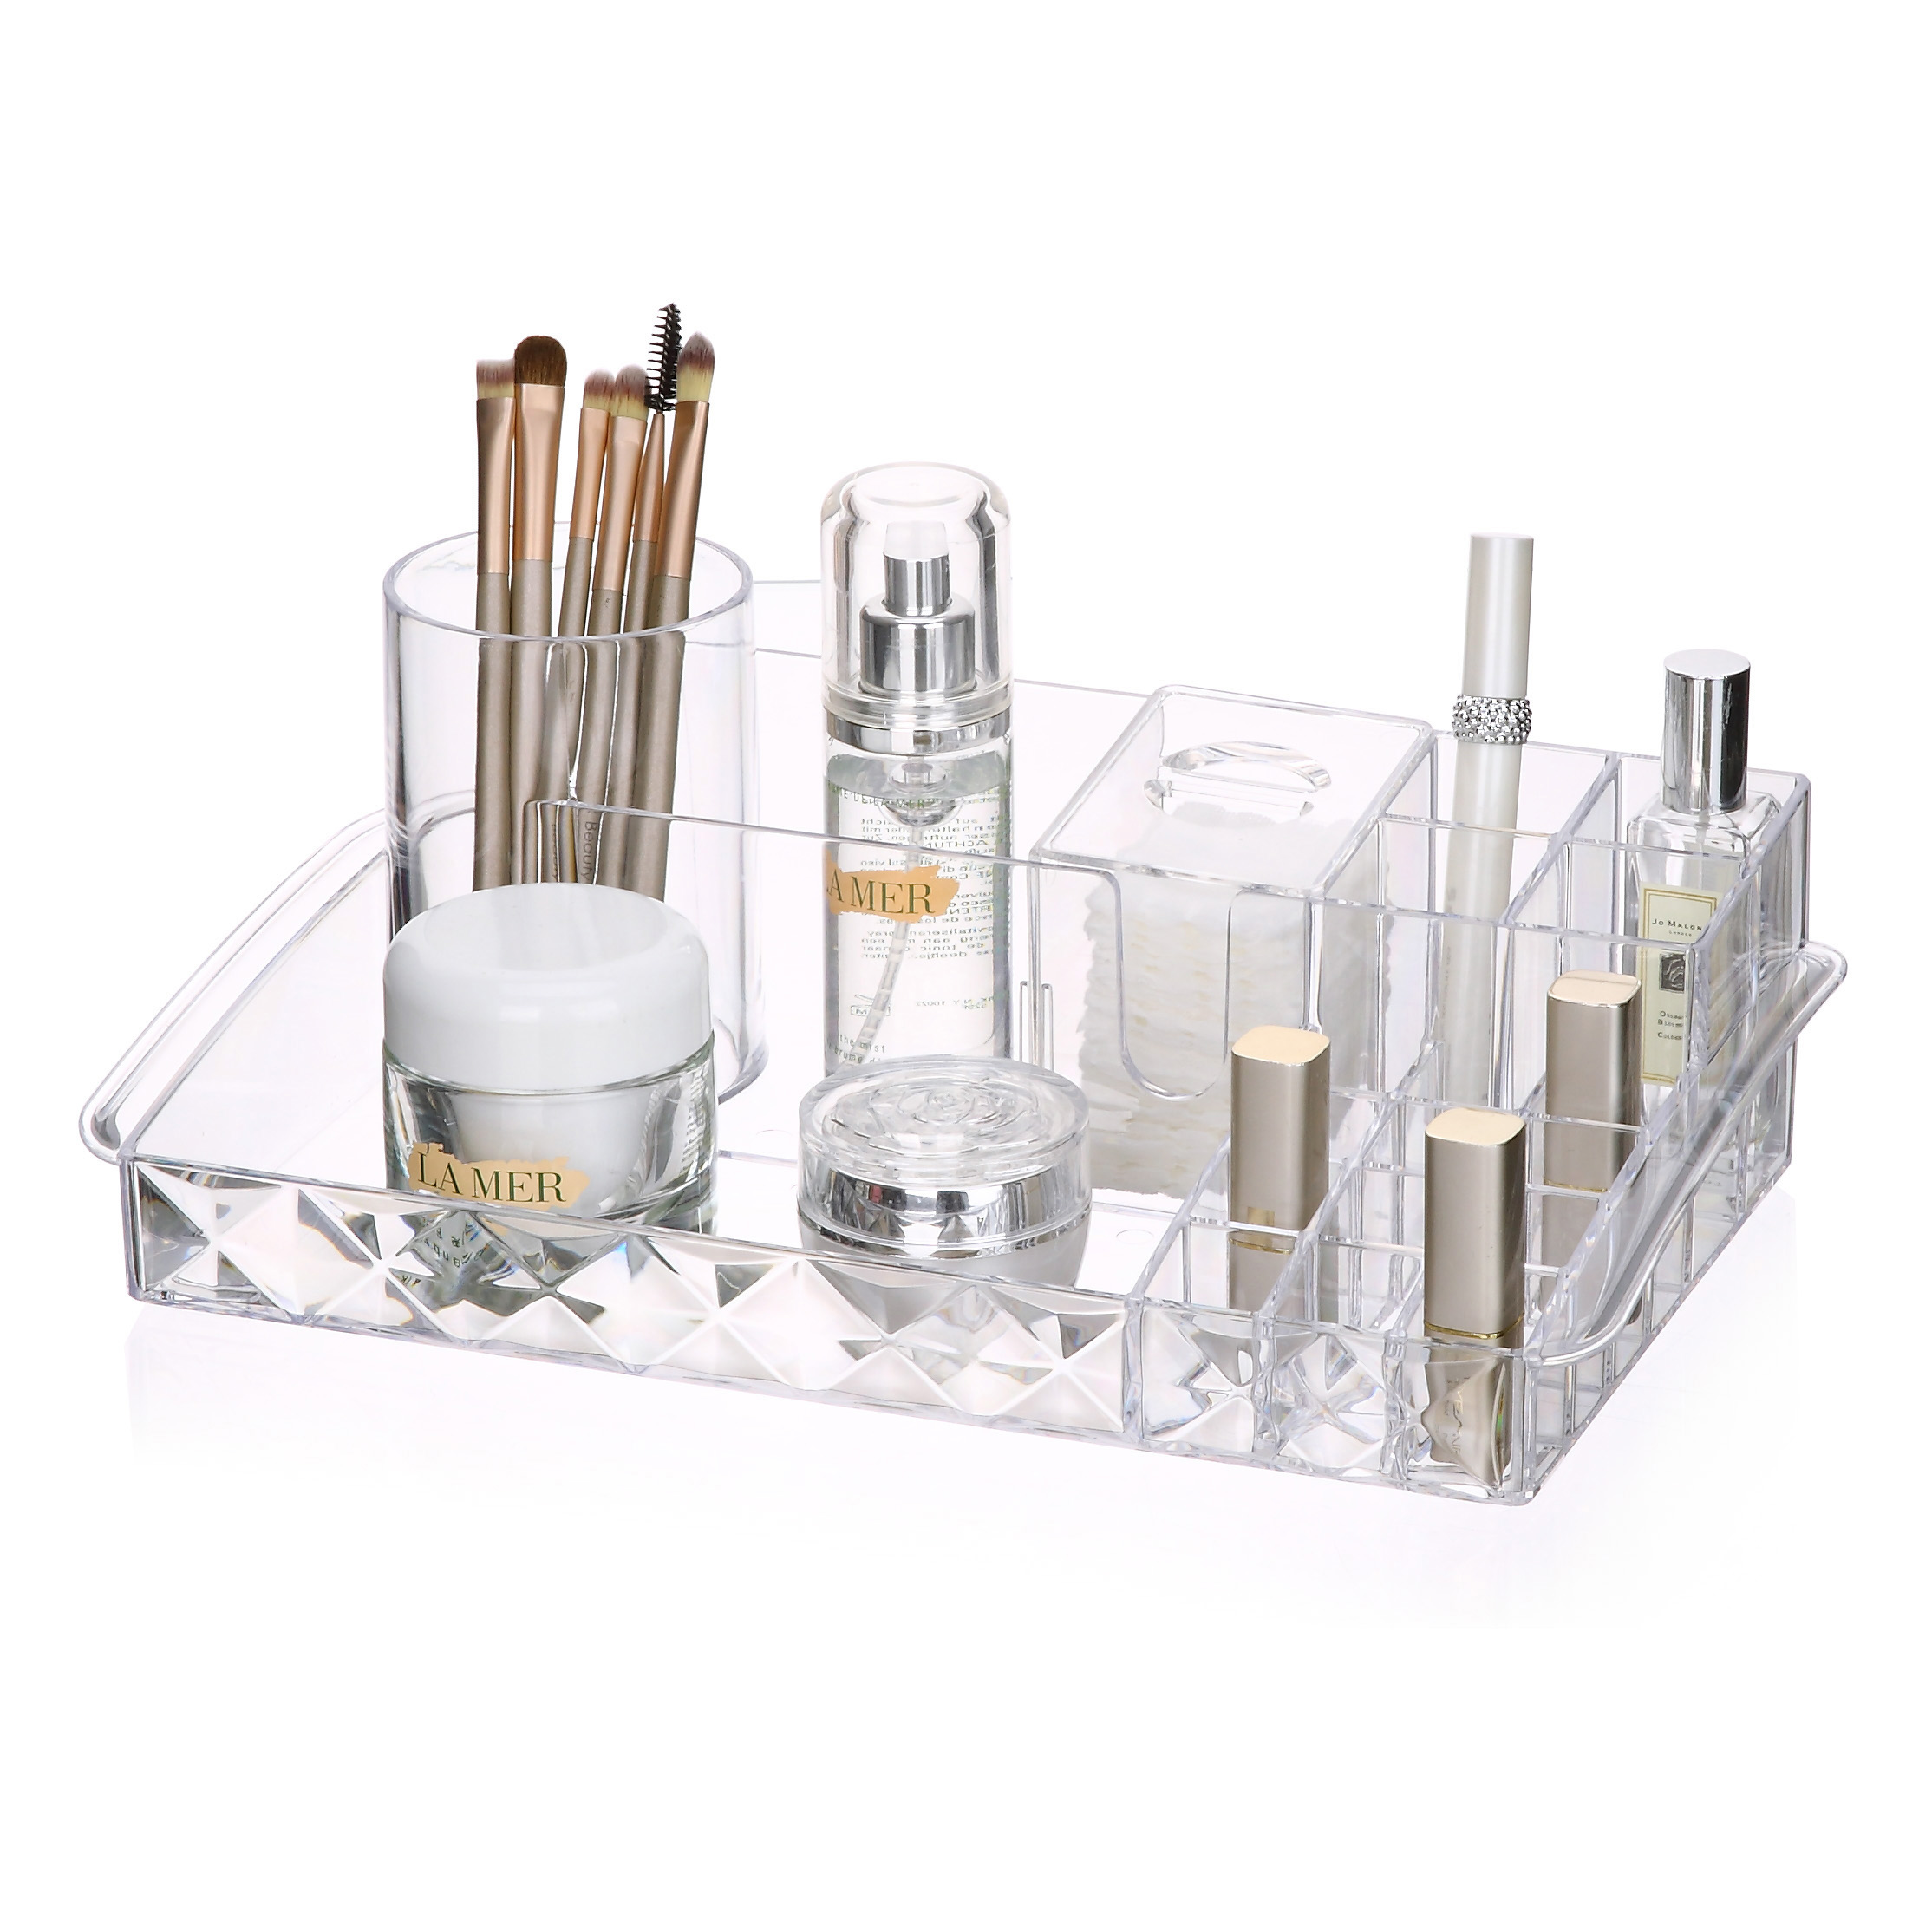 Cepillo de maquillaje a prueba de polvo de escritorio ecológico soporte de almacenamiento de herramientas faciales organizador de almacenamiento de cajón de maquillaje de baño de plástico